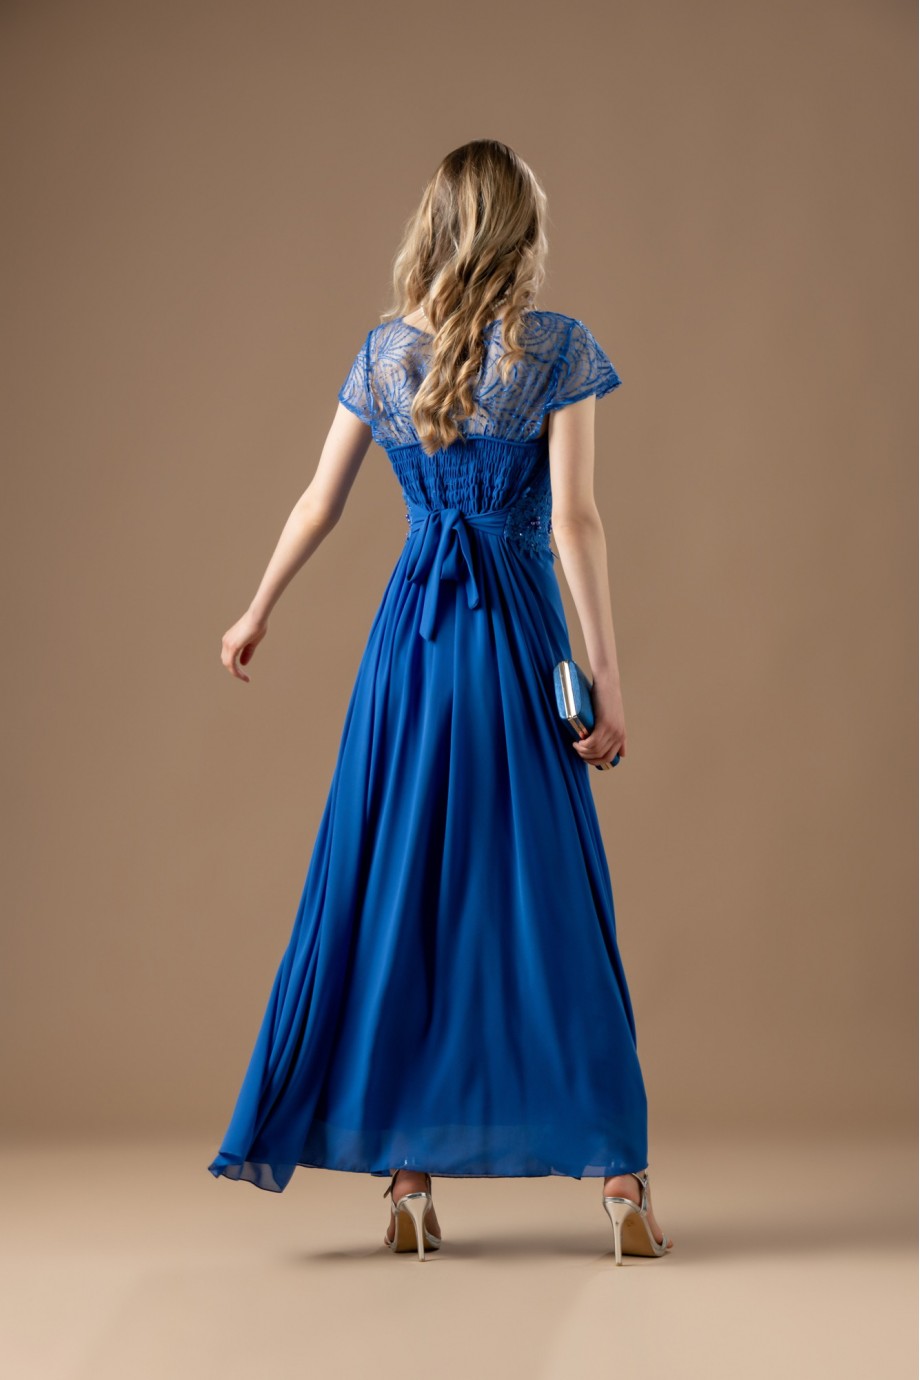 Μακρύ μπλε ηλεκτρικ φόρεμα με ιδιαίτερη δαντέλα